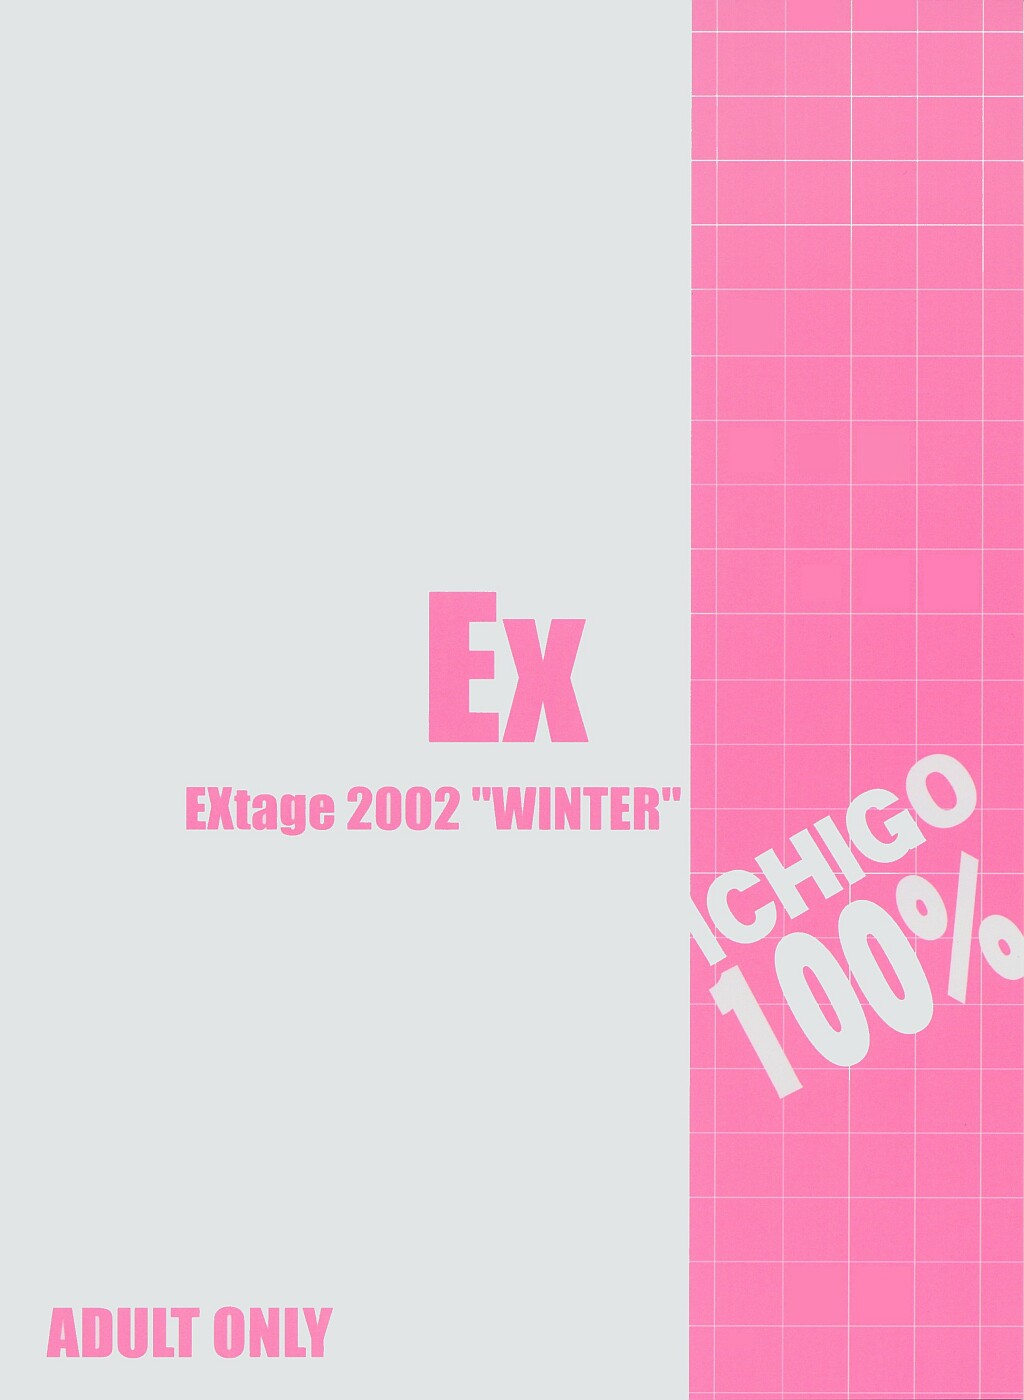 (C63) [EXtage (Minakami Hiroki)] EXtra stage vol. 8 (Ichigo 100%) (C63) [EXtage (水上広樹)] EXtra stage vol.8 (いちご100%)